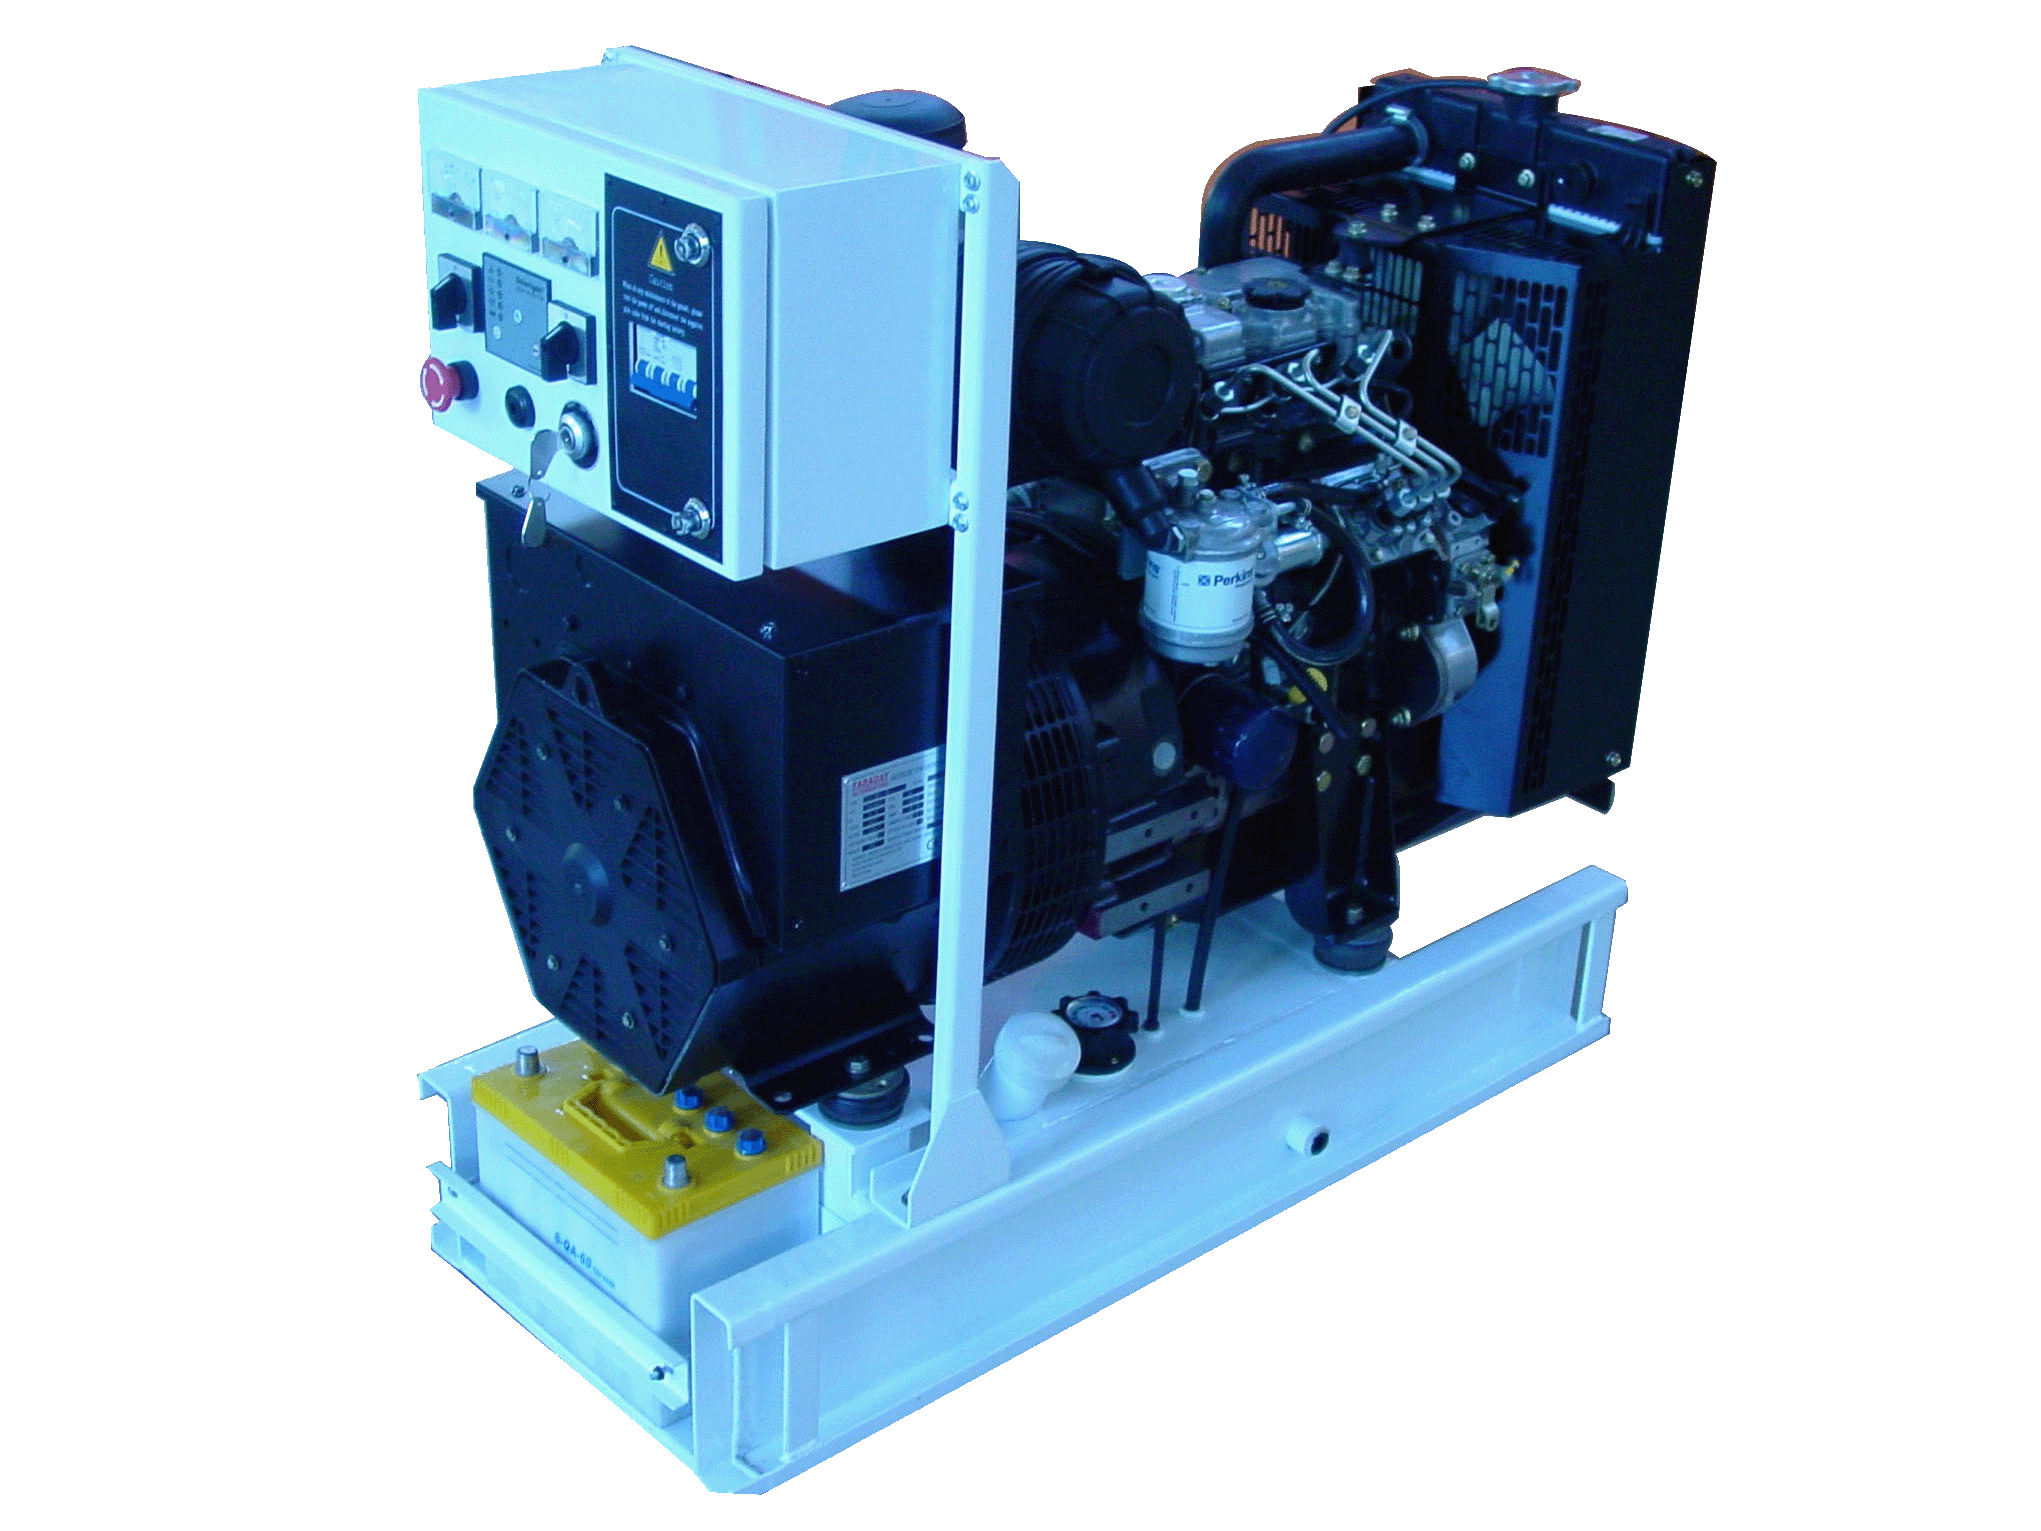 Diesel generating set powered by Perkins